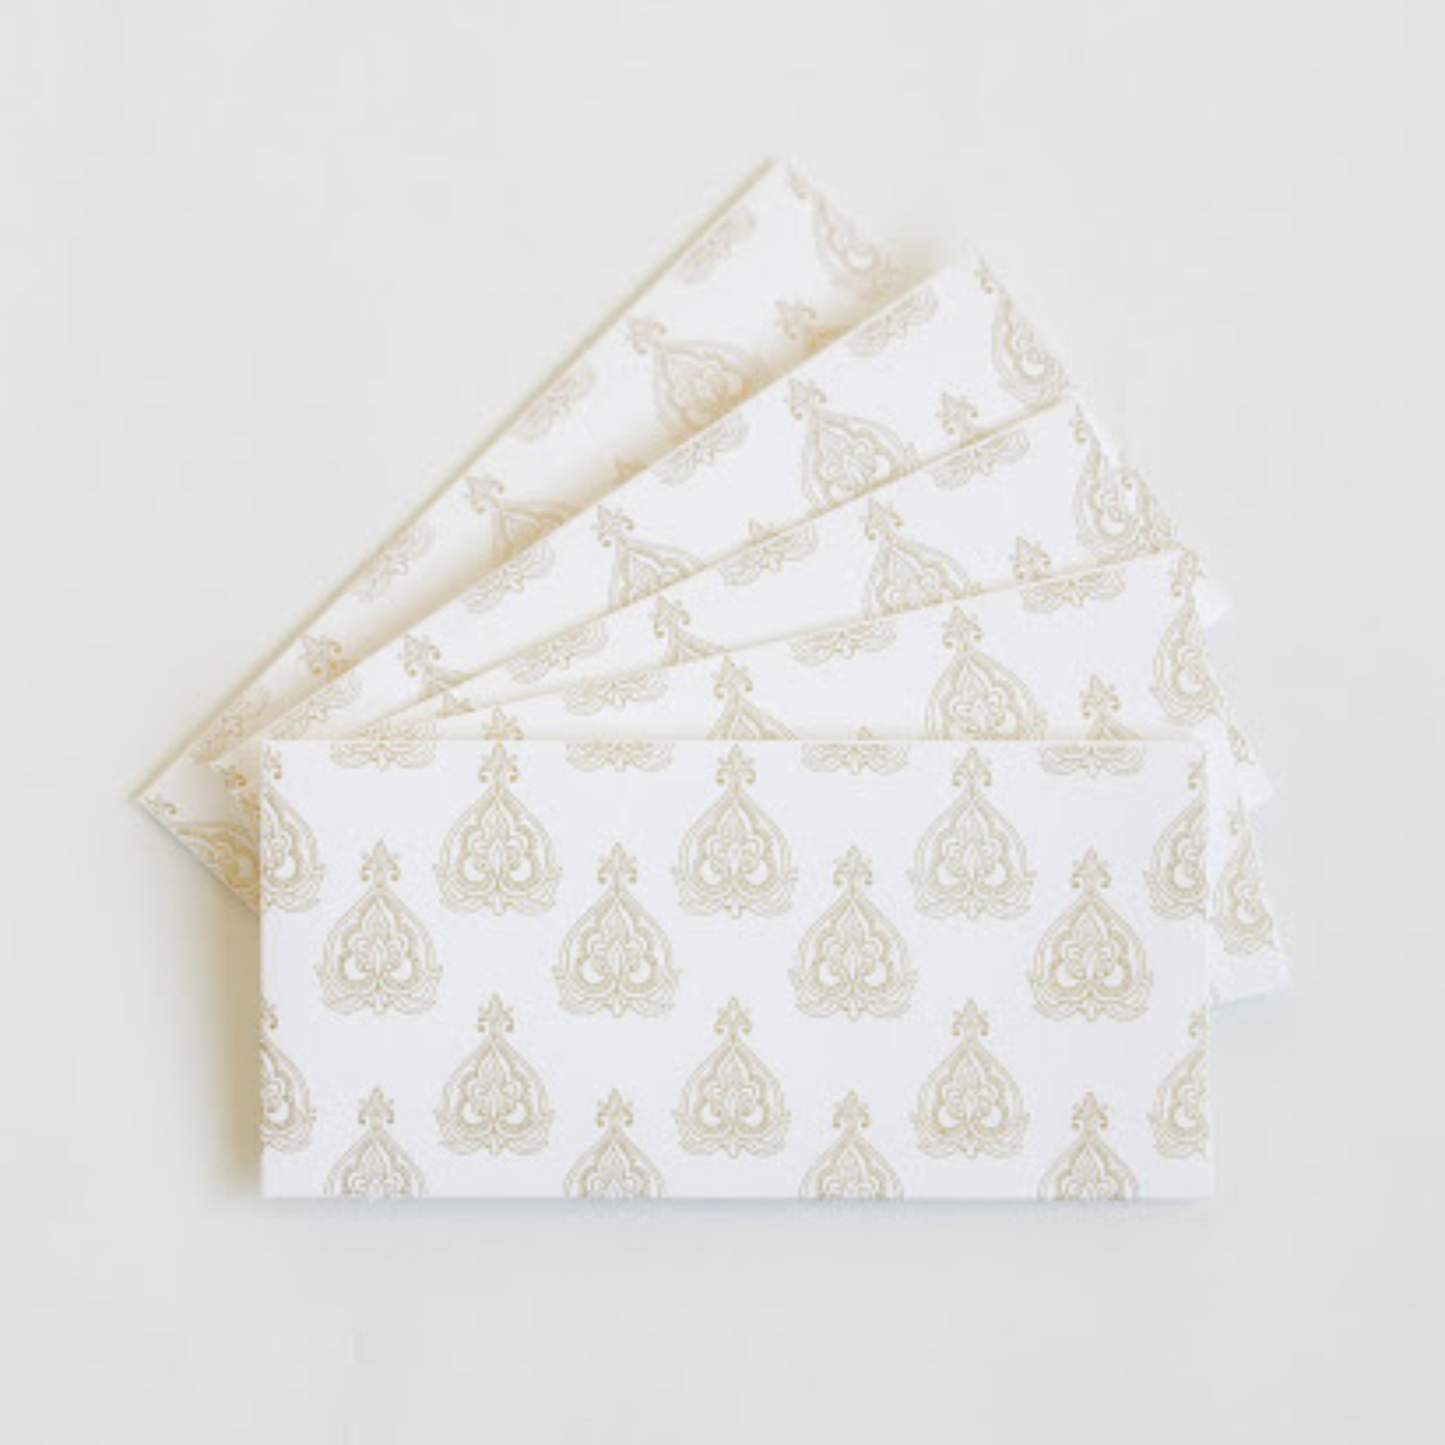 ivory gift money envelopes for shugun gifting from decorasian